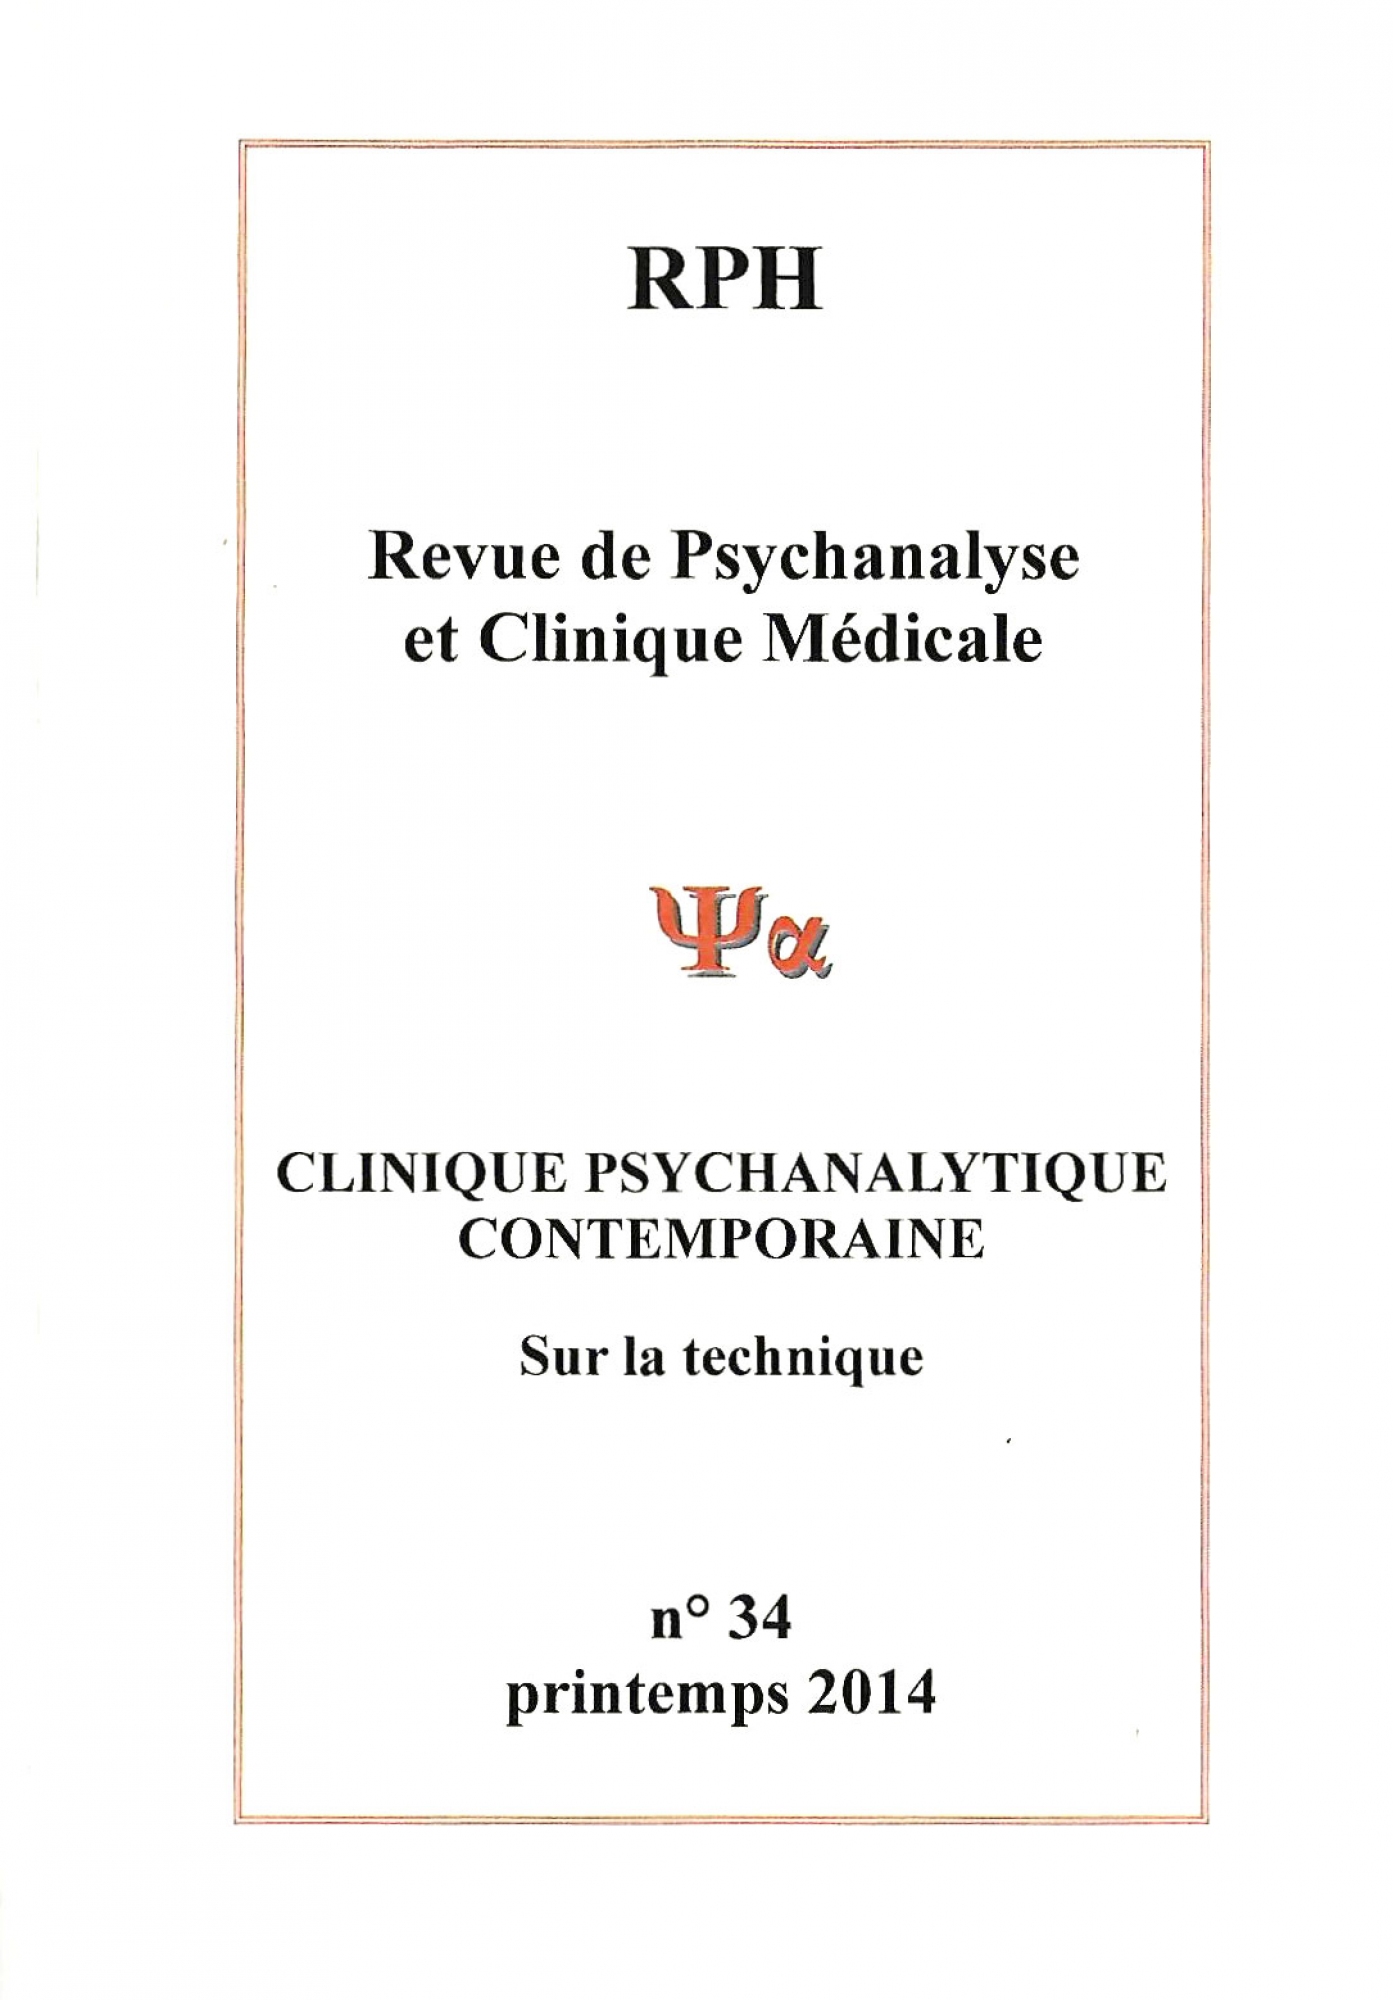 Consulter articles de psychologie sur la technique psychanalytique proche Paris